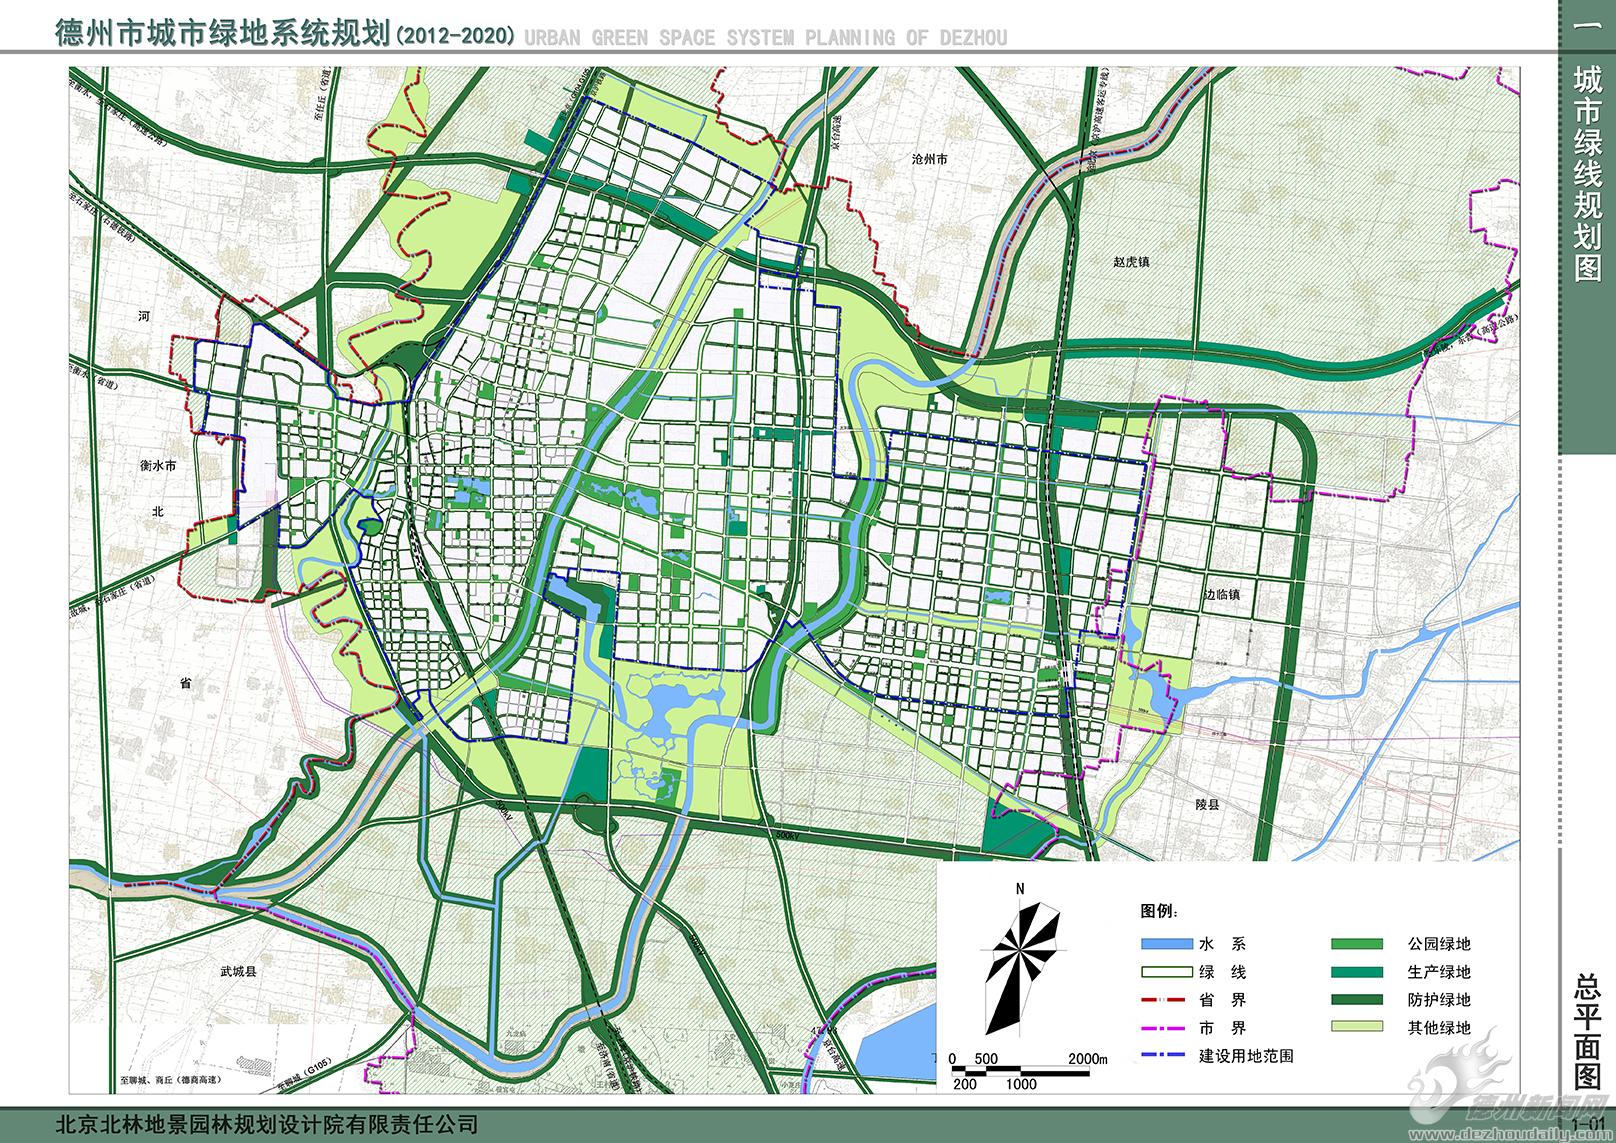 城市绿地系统规划公示(2012-2020)